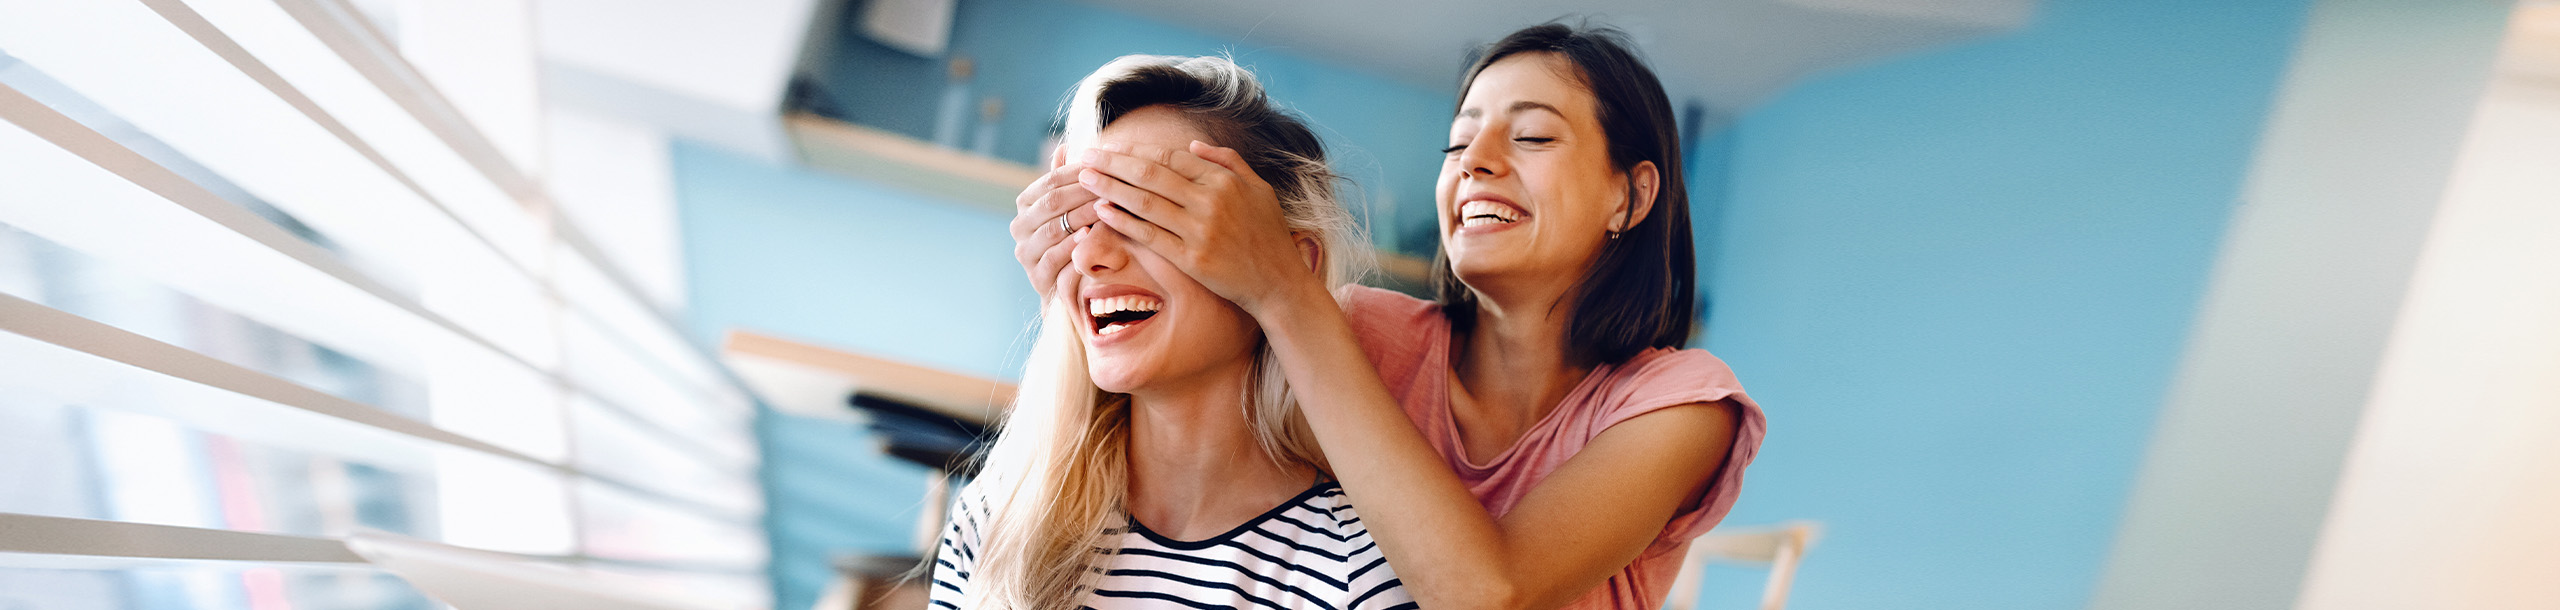 Eine Frau hält einer anderen Frau die Augen zu während sie lachend vor einem Tablet sitzen